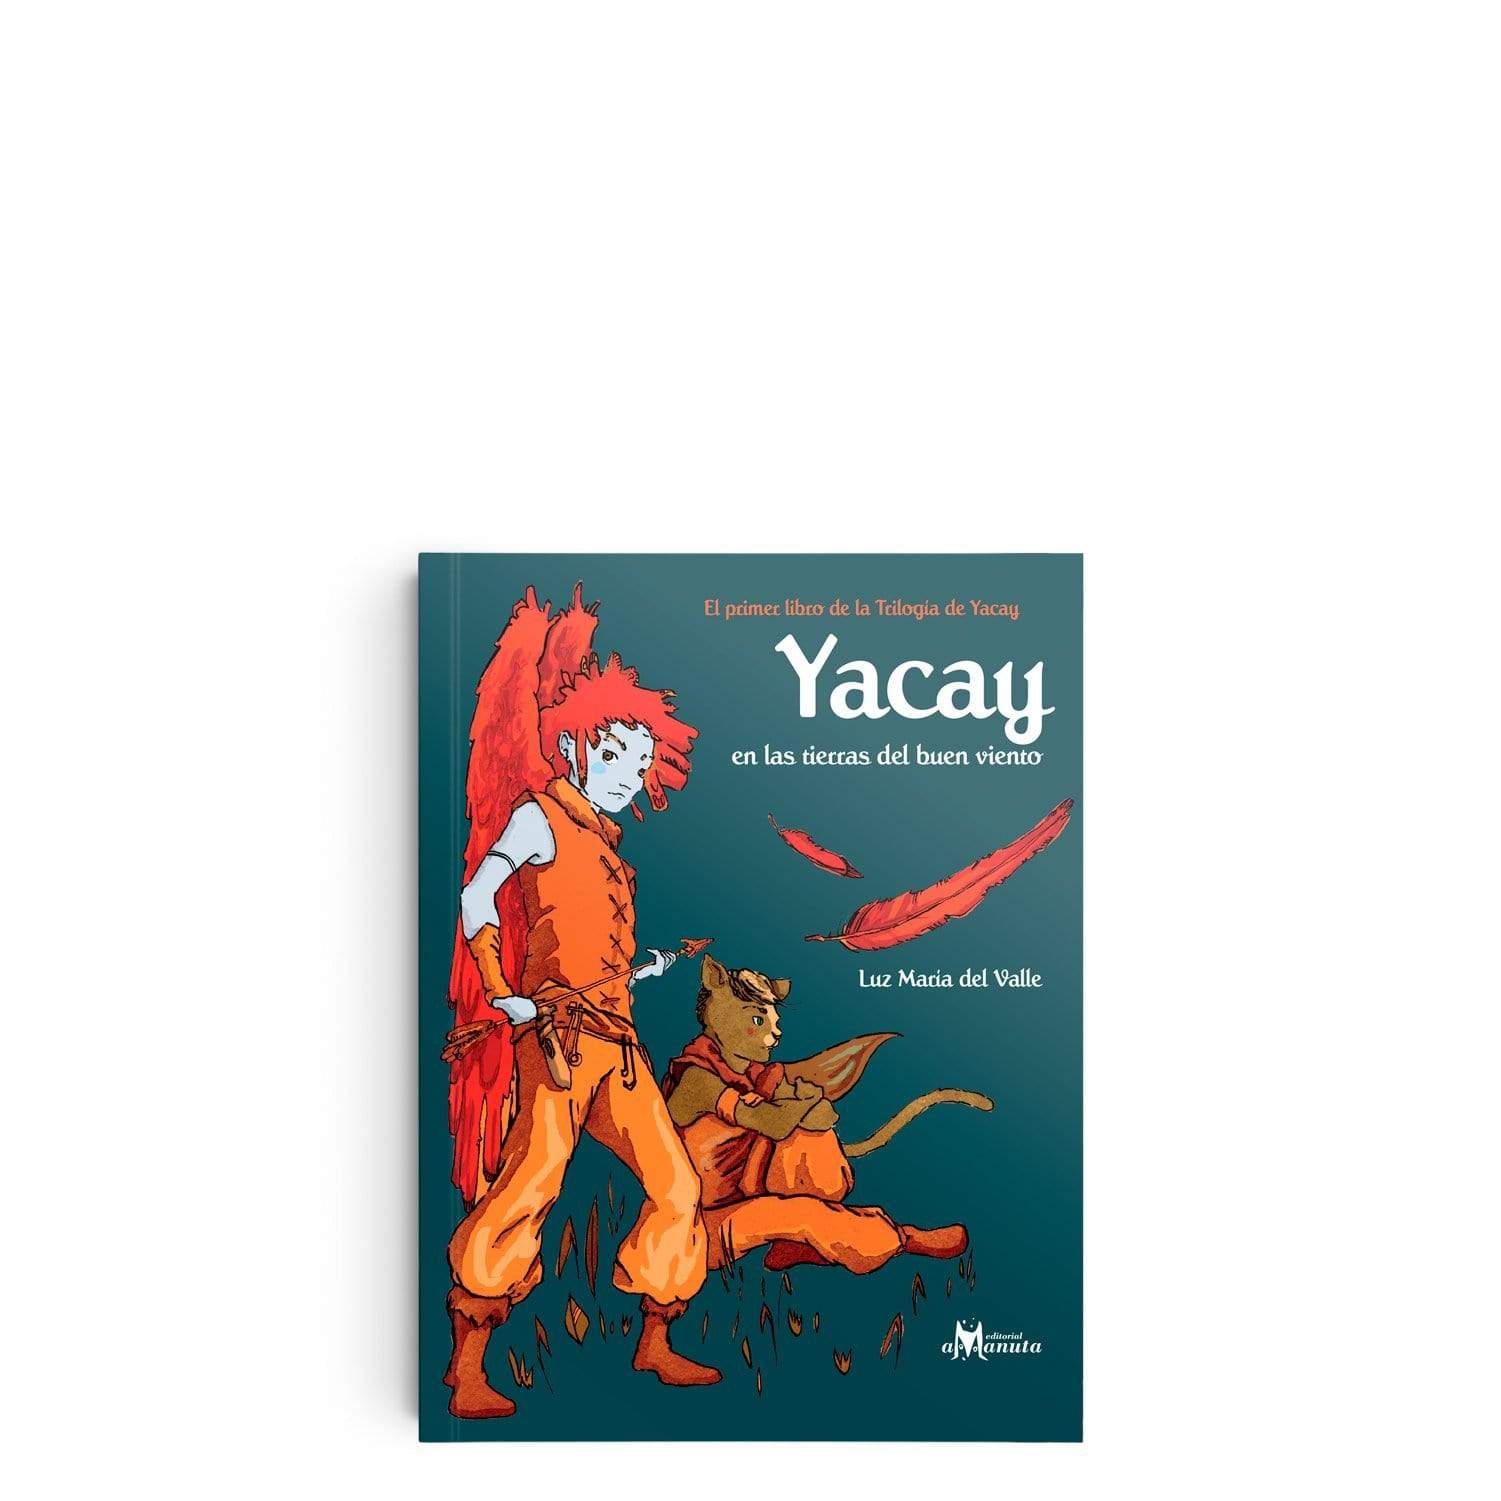 Libro "Yacay en las tierras del buen viento"